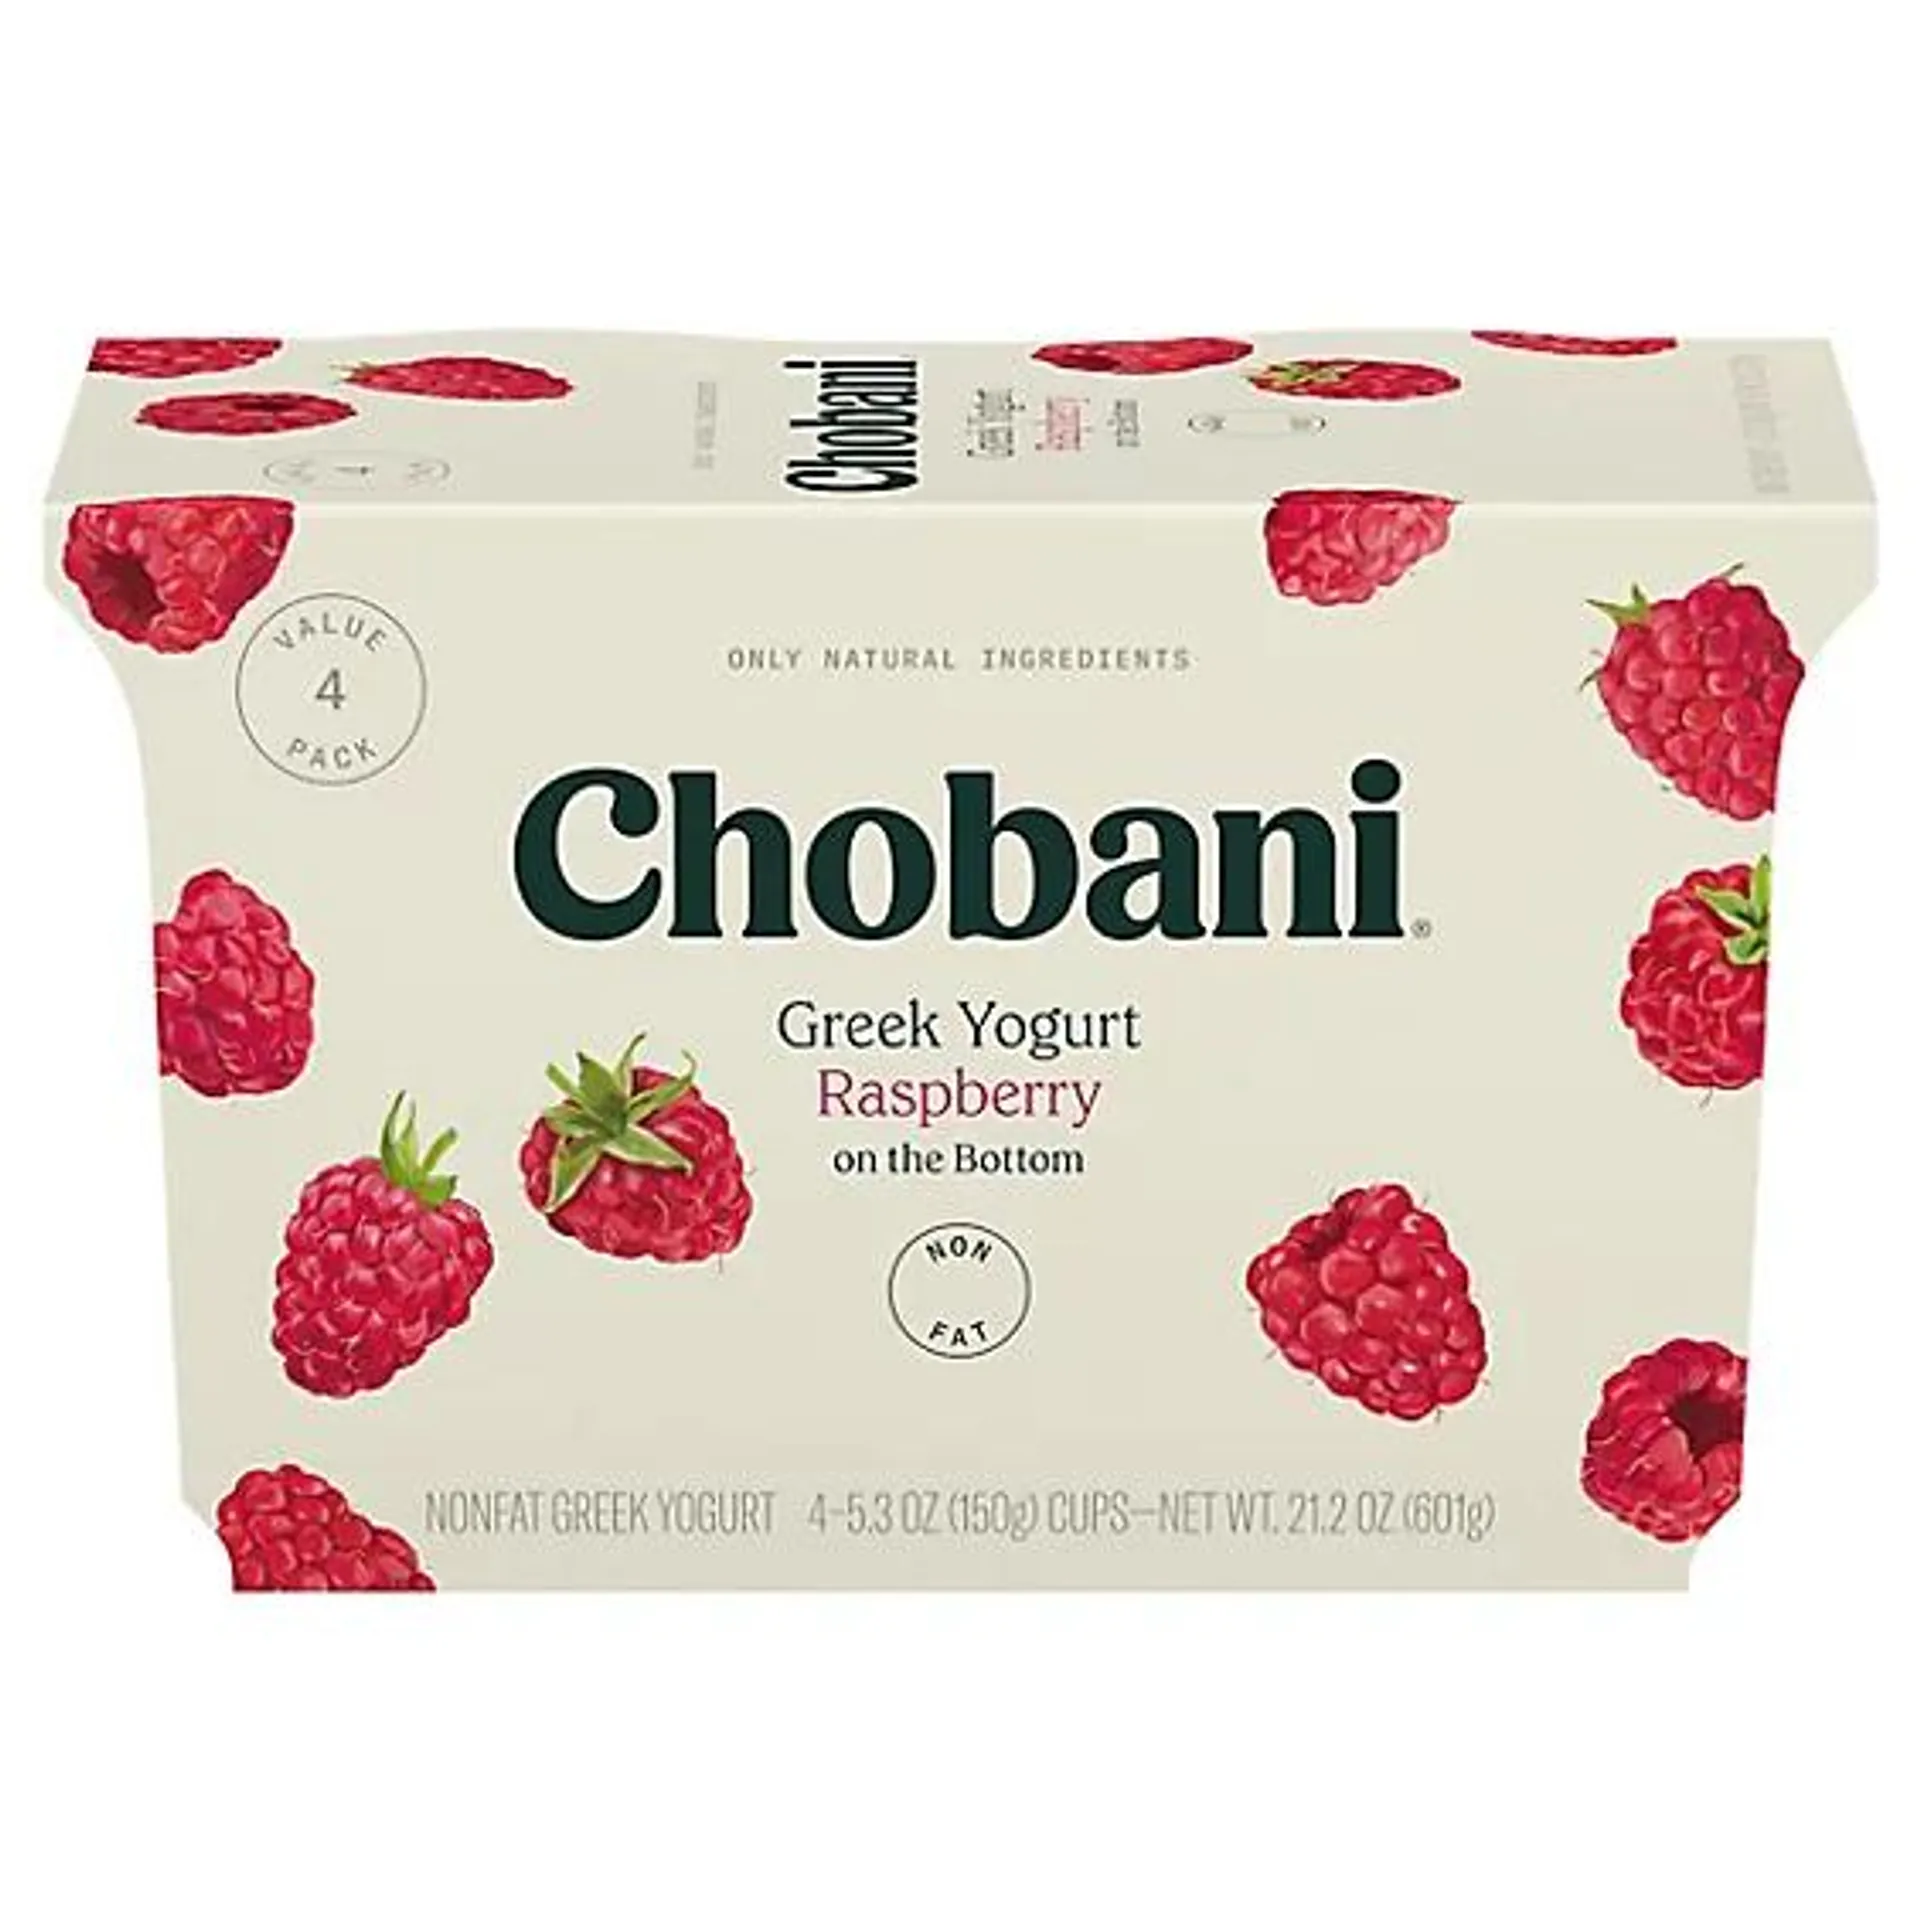 Chobani Yogurt Greek Nonfat Fruit On The Bottom Raspberry - 4-5.3 Oz